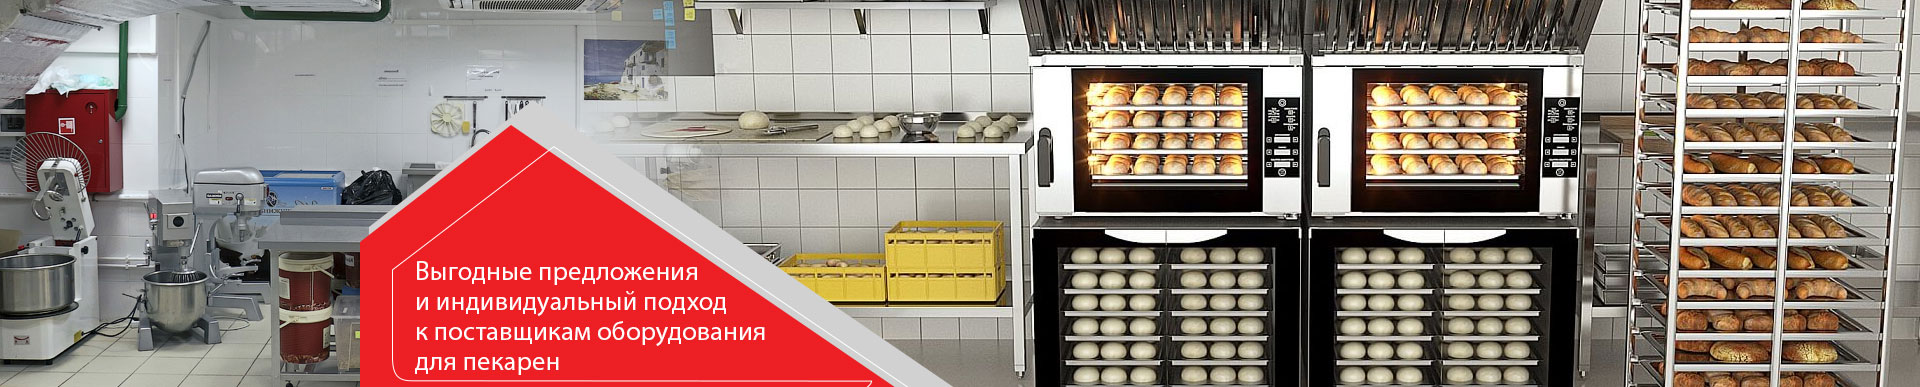 Выгодные предложения и индивидуальный подход к поставщикам оборудования для пекарен